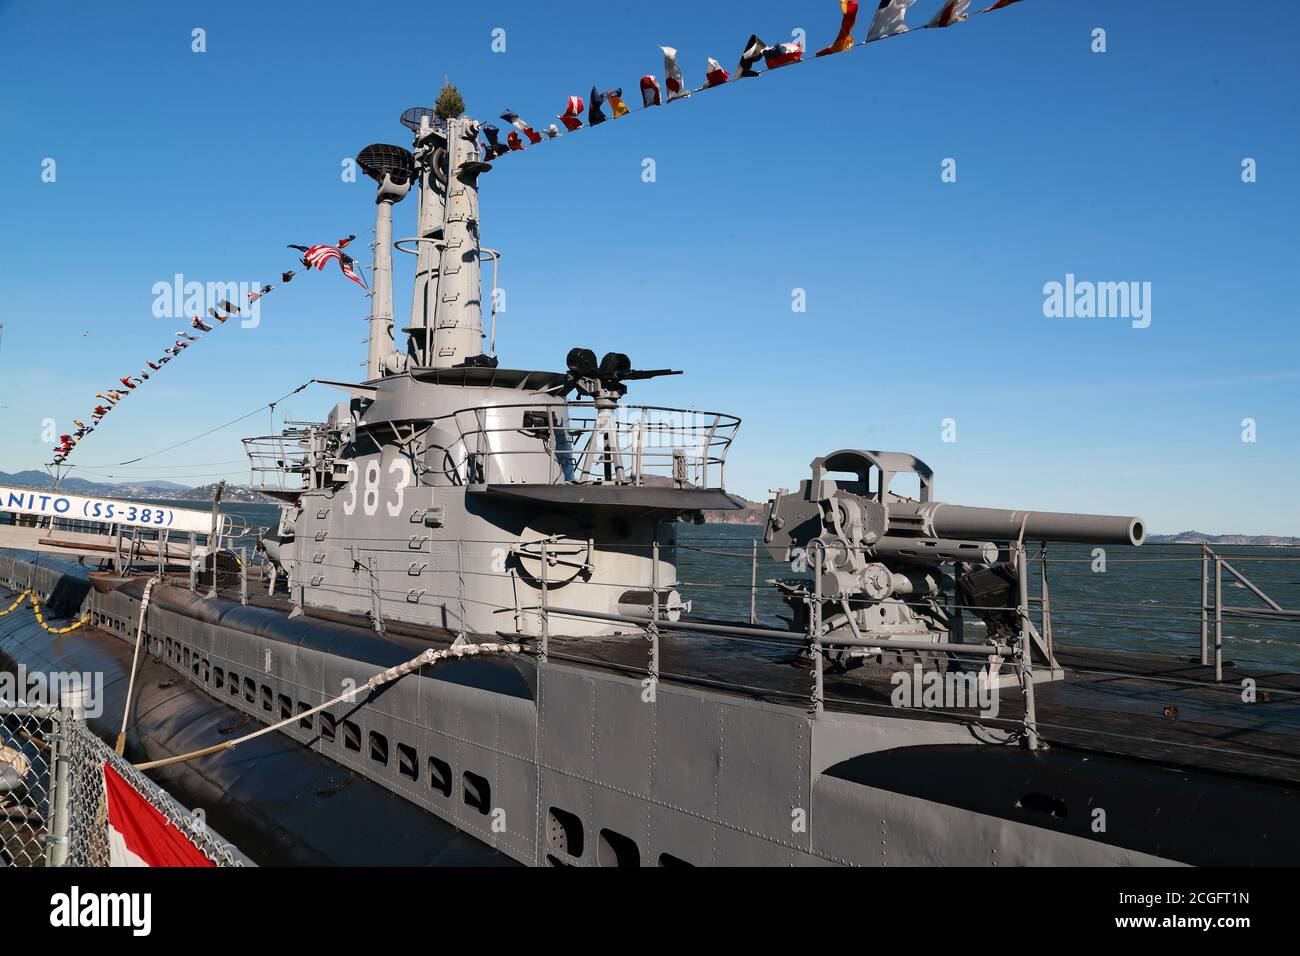 Wk II U-Boot USS Pampanito vertäut im Hafen von San Francisco, USA Stockfoto